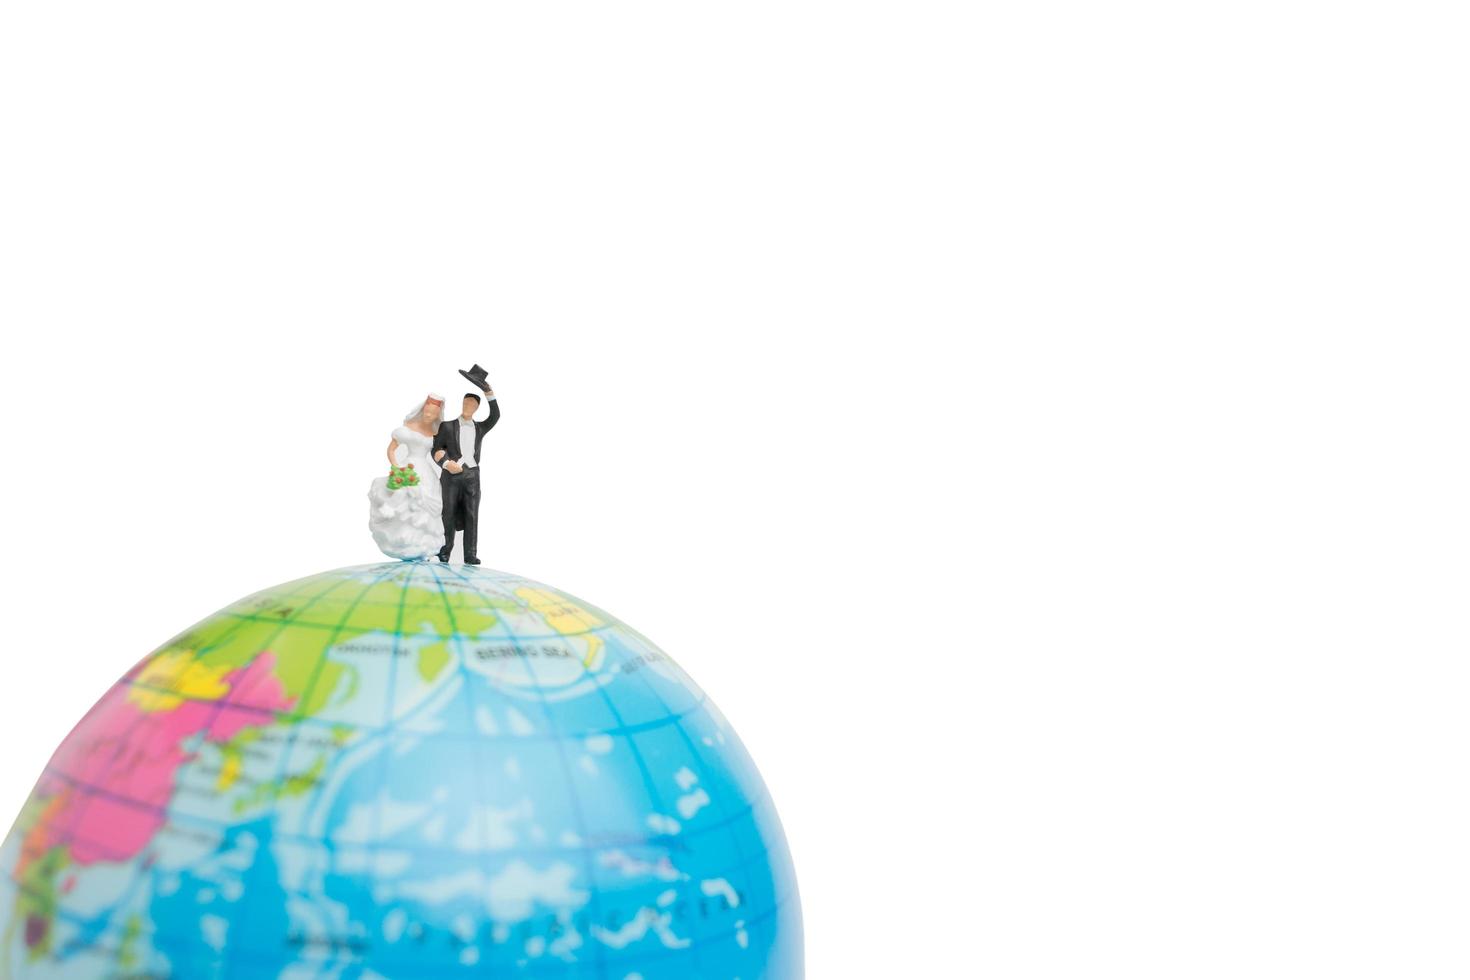 Mariage miniature, couple de mariés sur un globe sur fond blanc photo